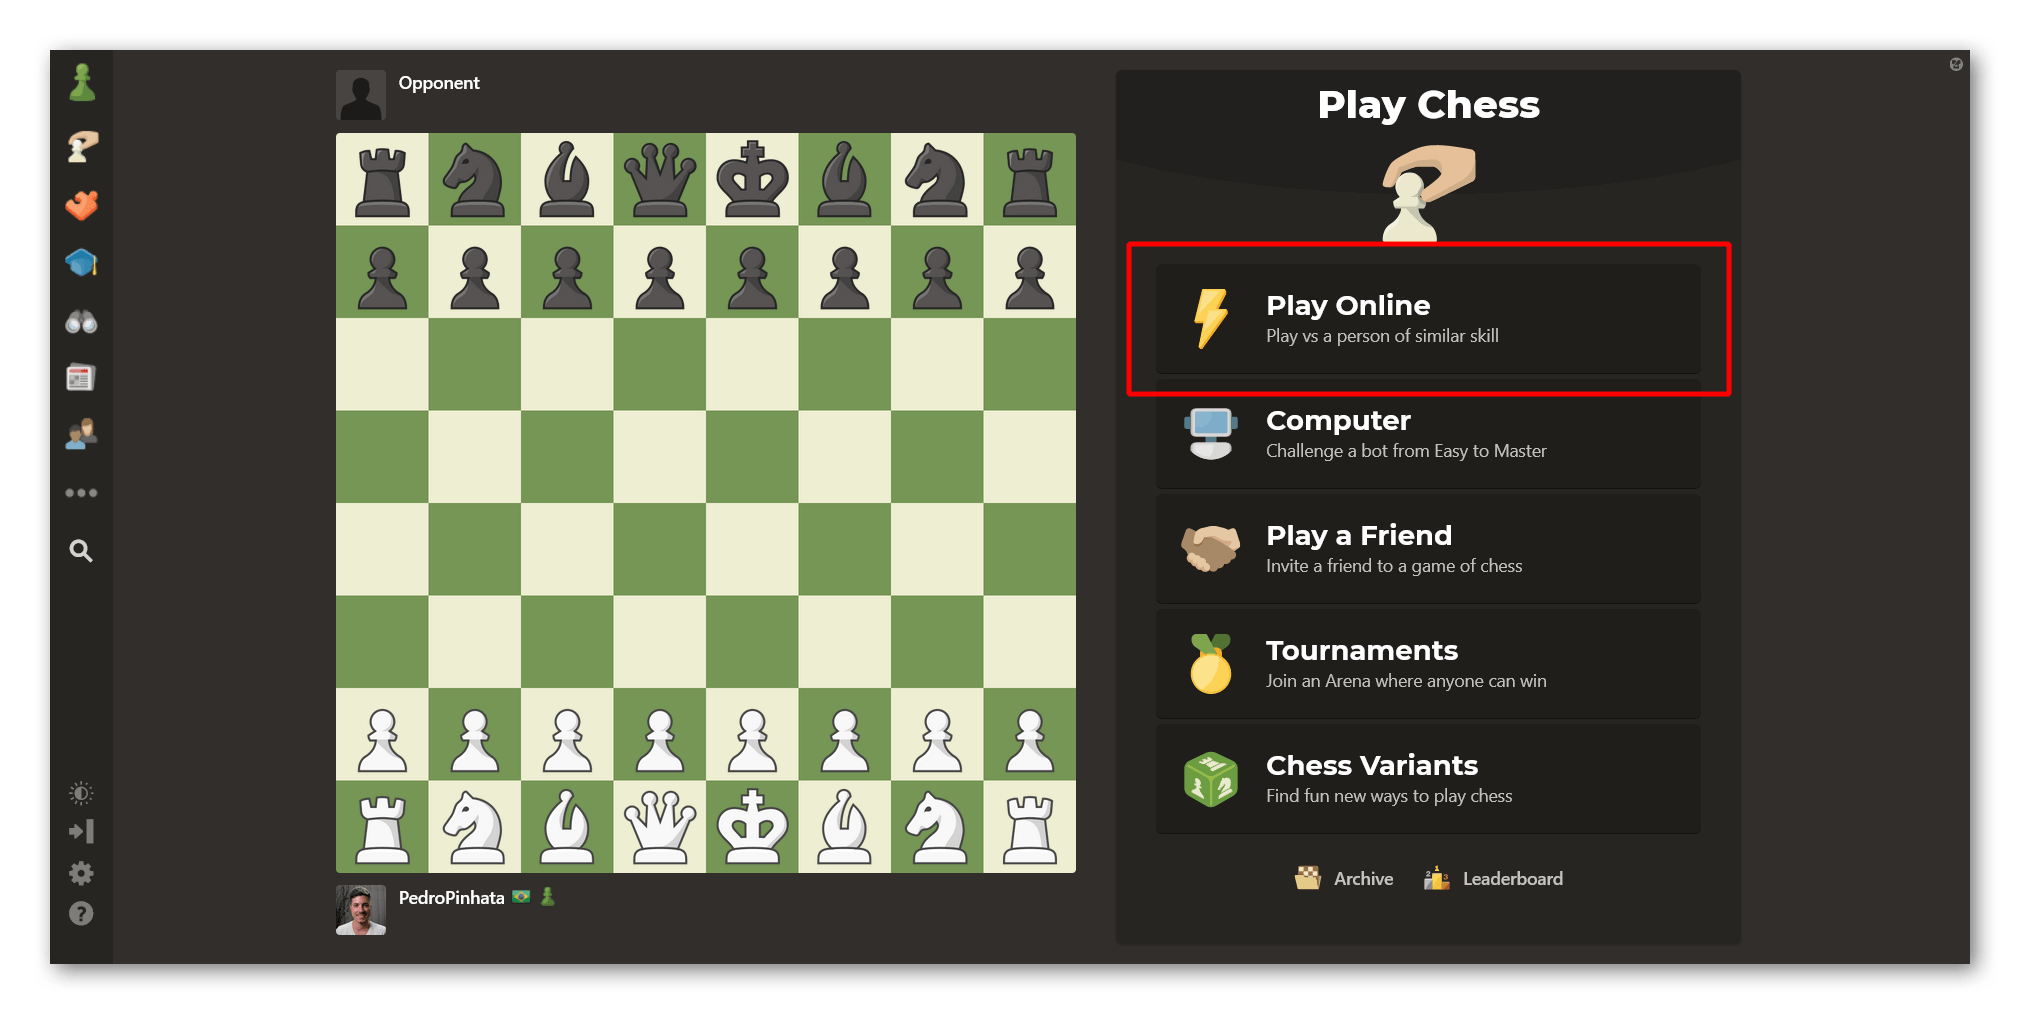 เล่นออนไลน์โดยใช้หน้าเล่นบน Chess.com